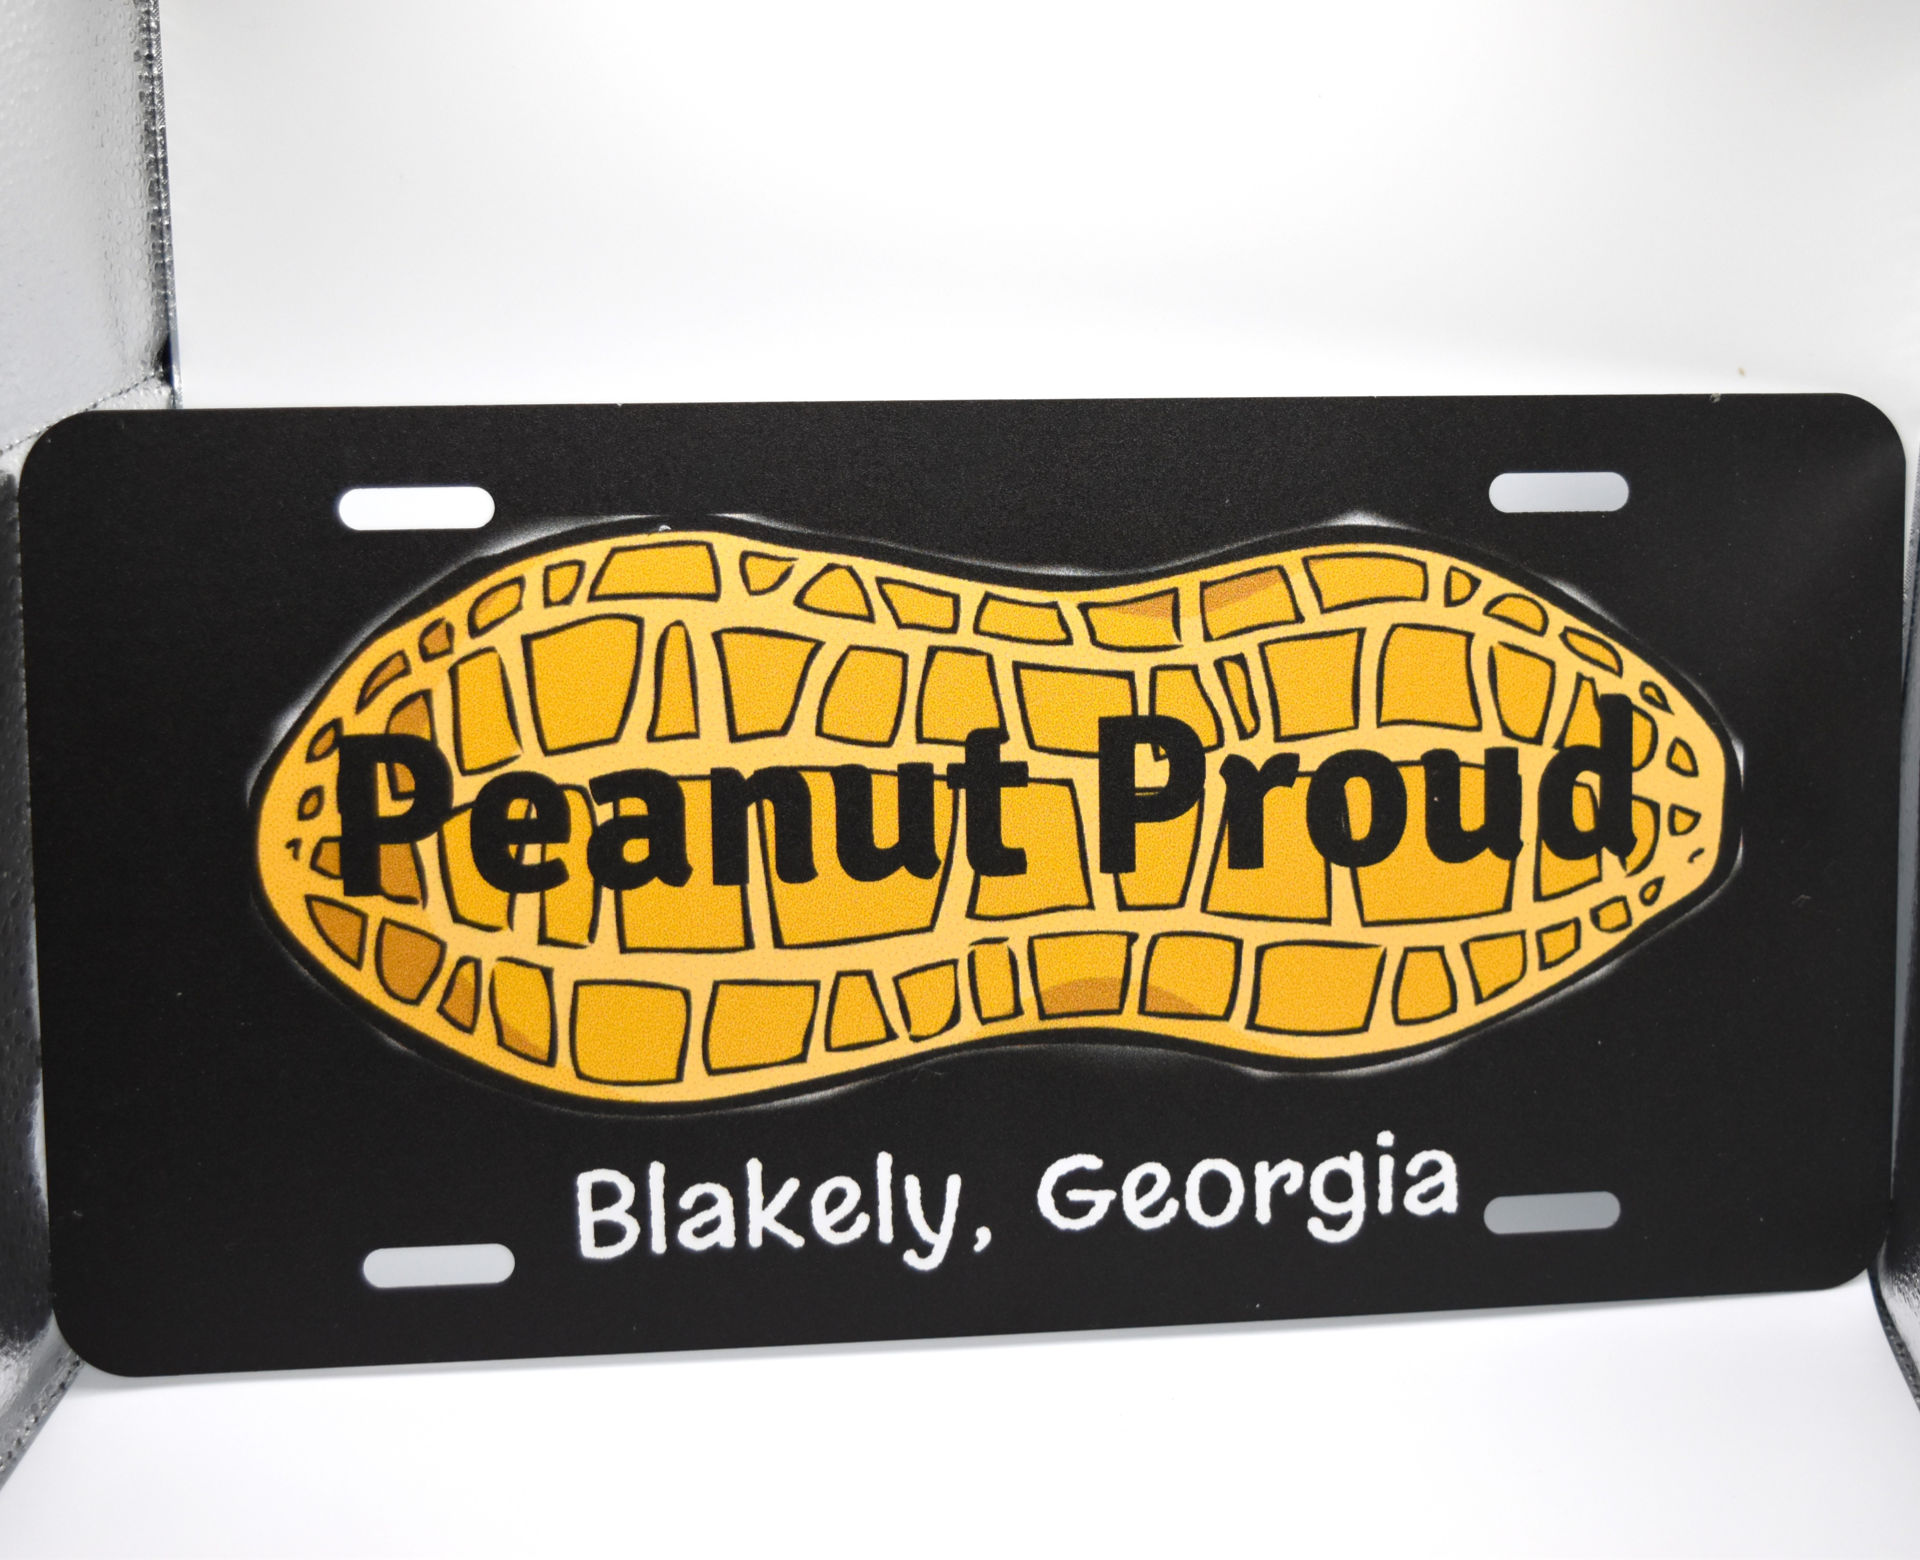 Peanut Proud Car Tag